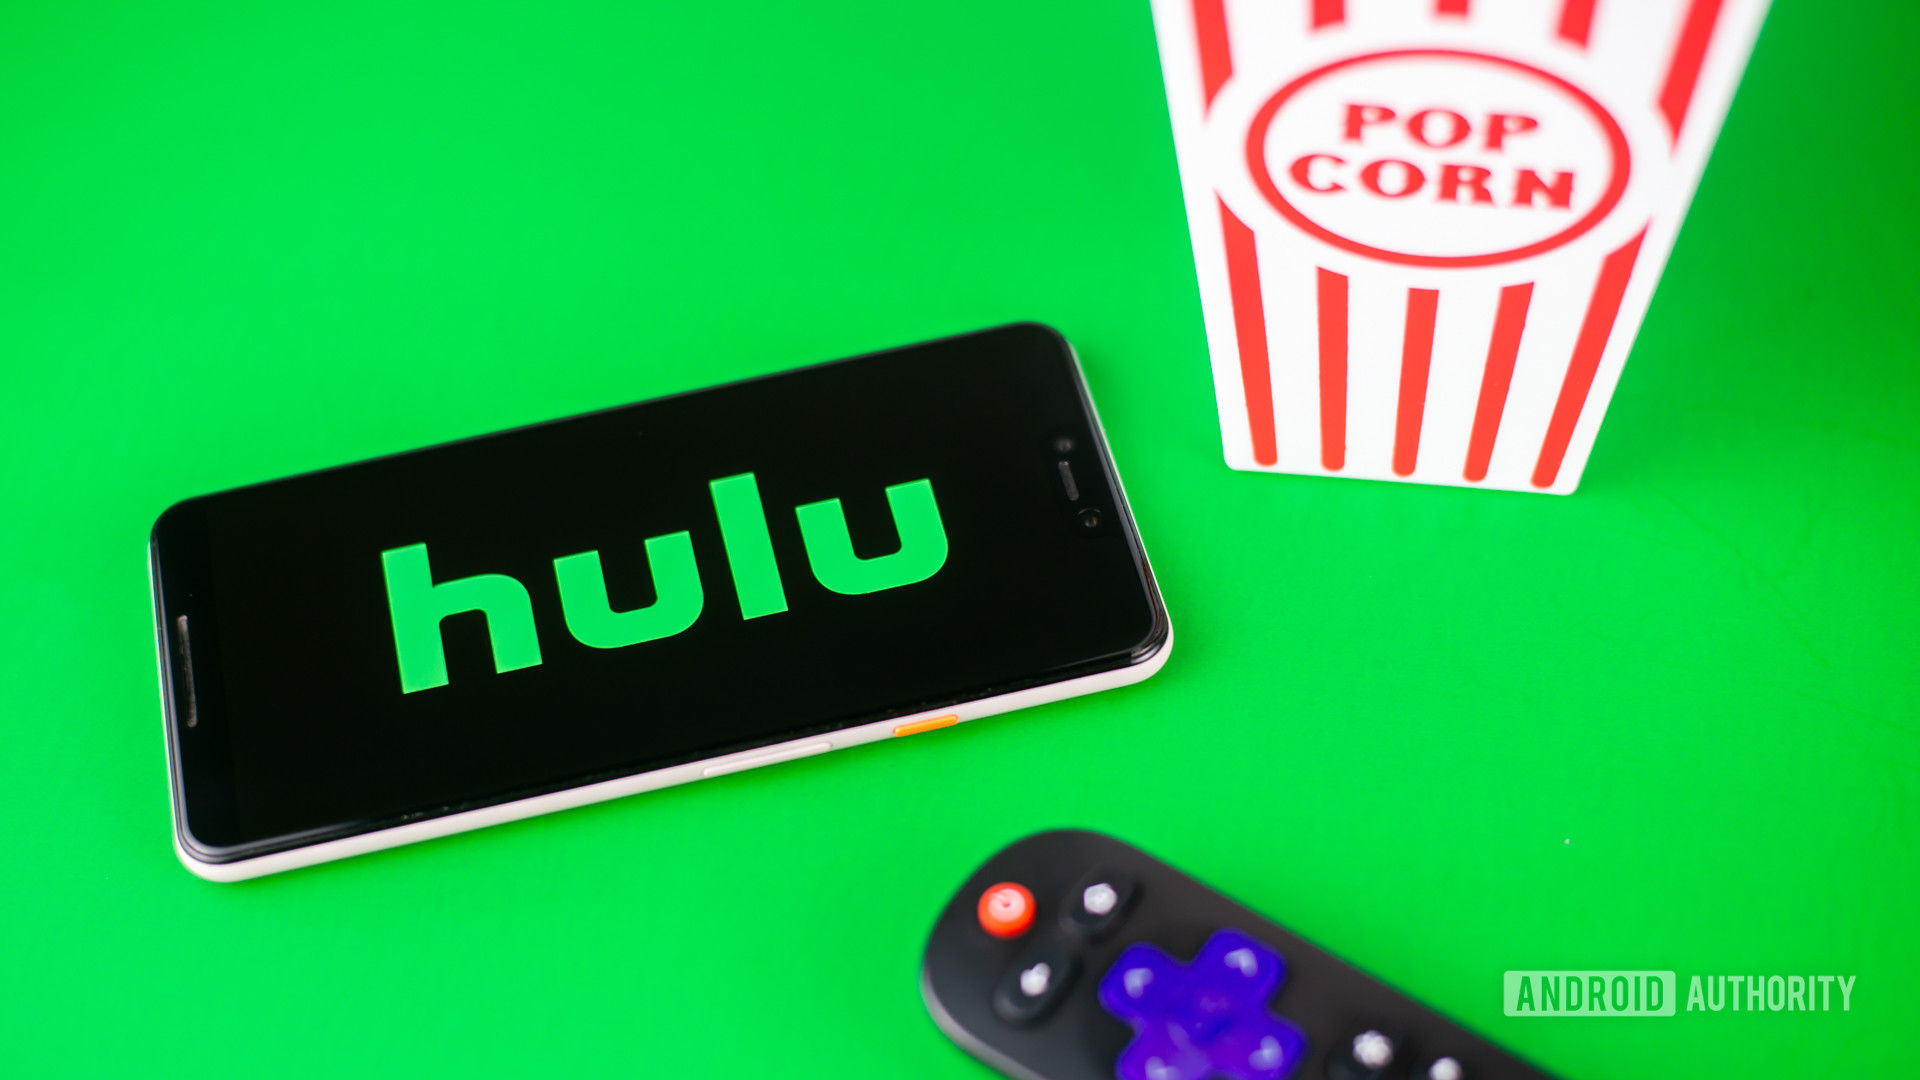 Hulu股票照片绿色背景2